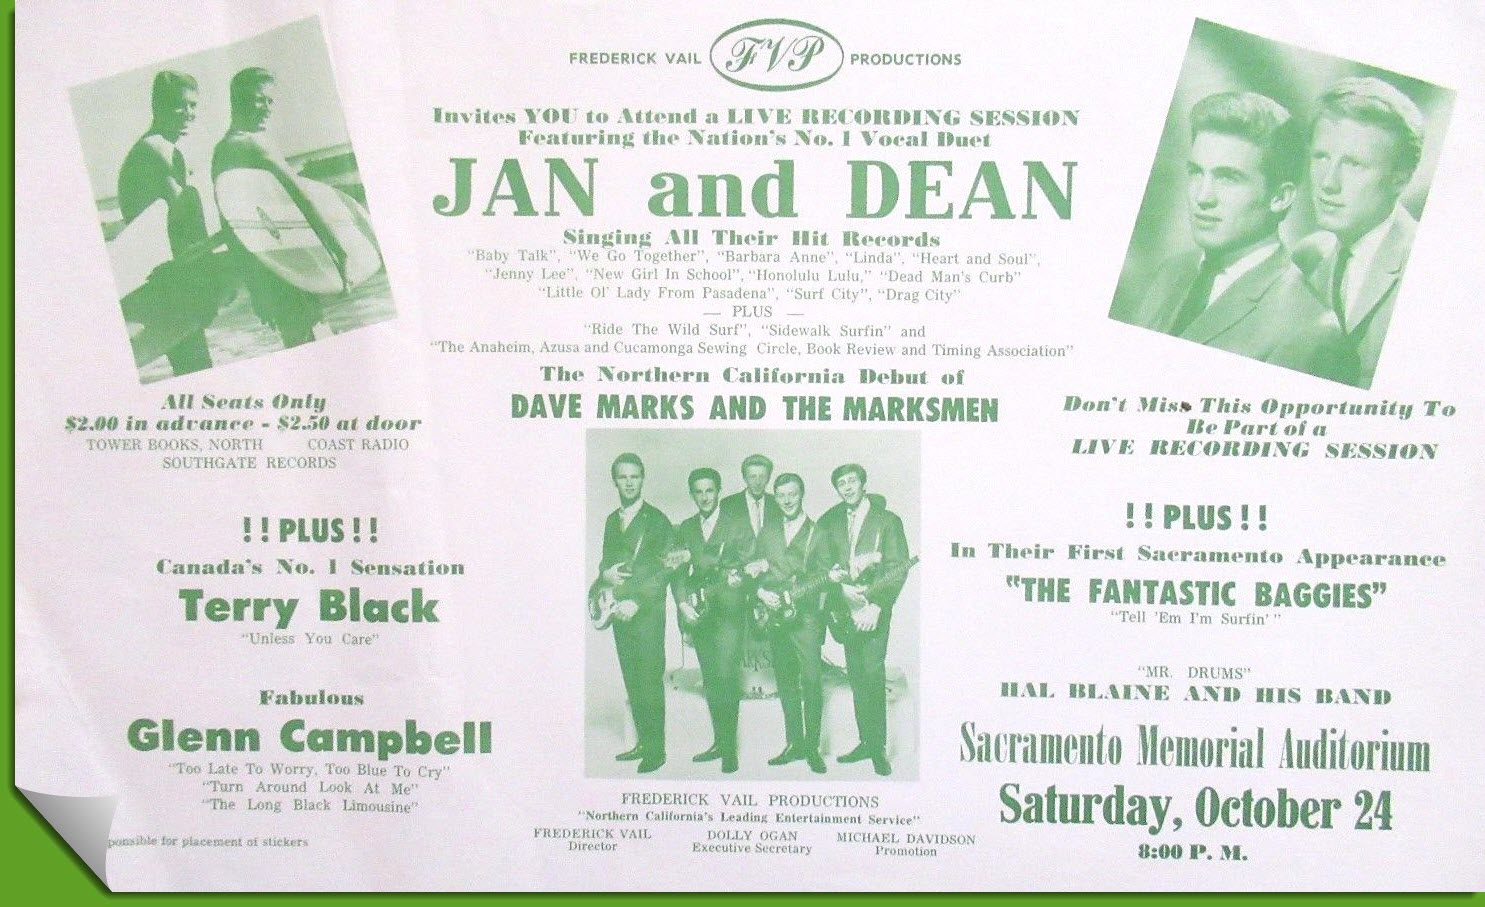 Jan and Dean Concert_Glen Campbell_Sacramento_Oct 24 1964-gcf.jpg